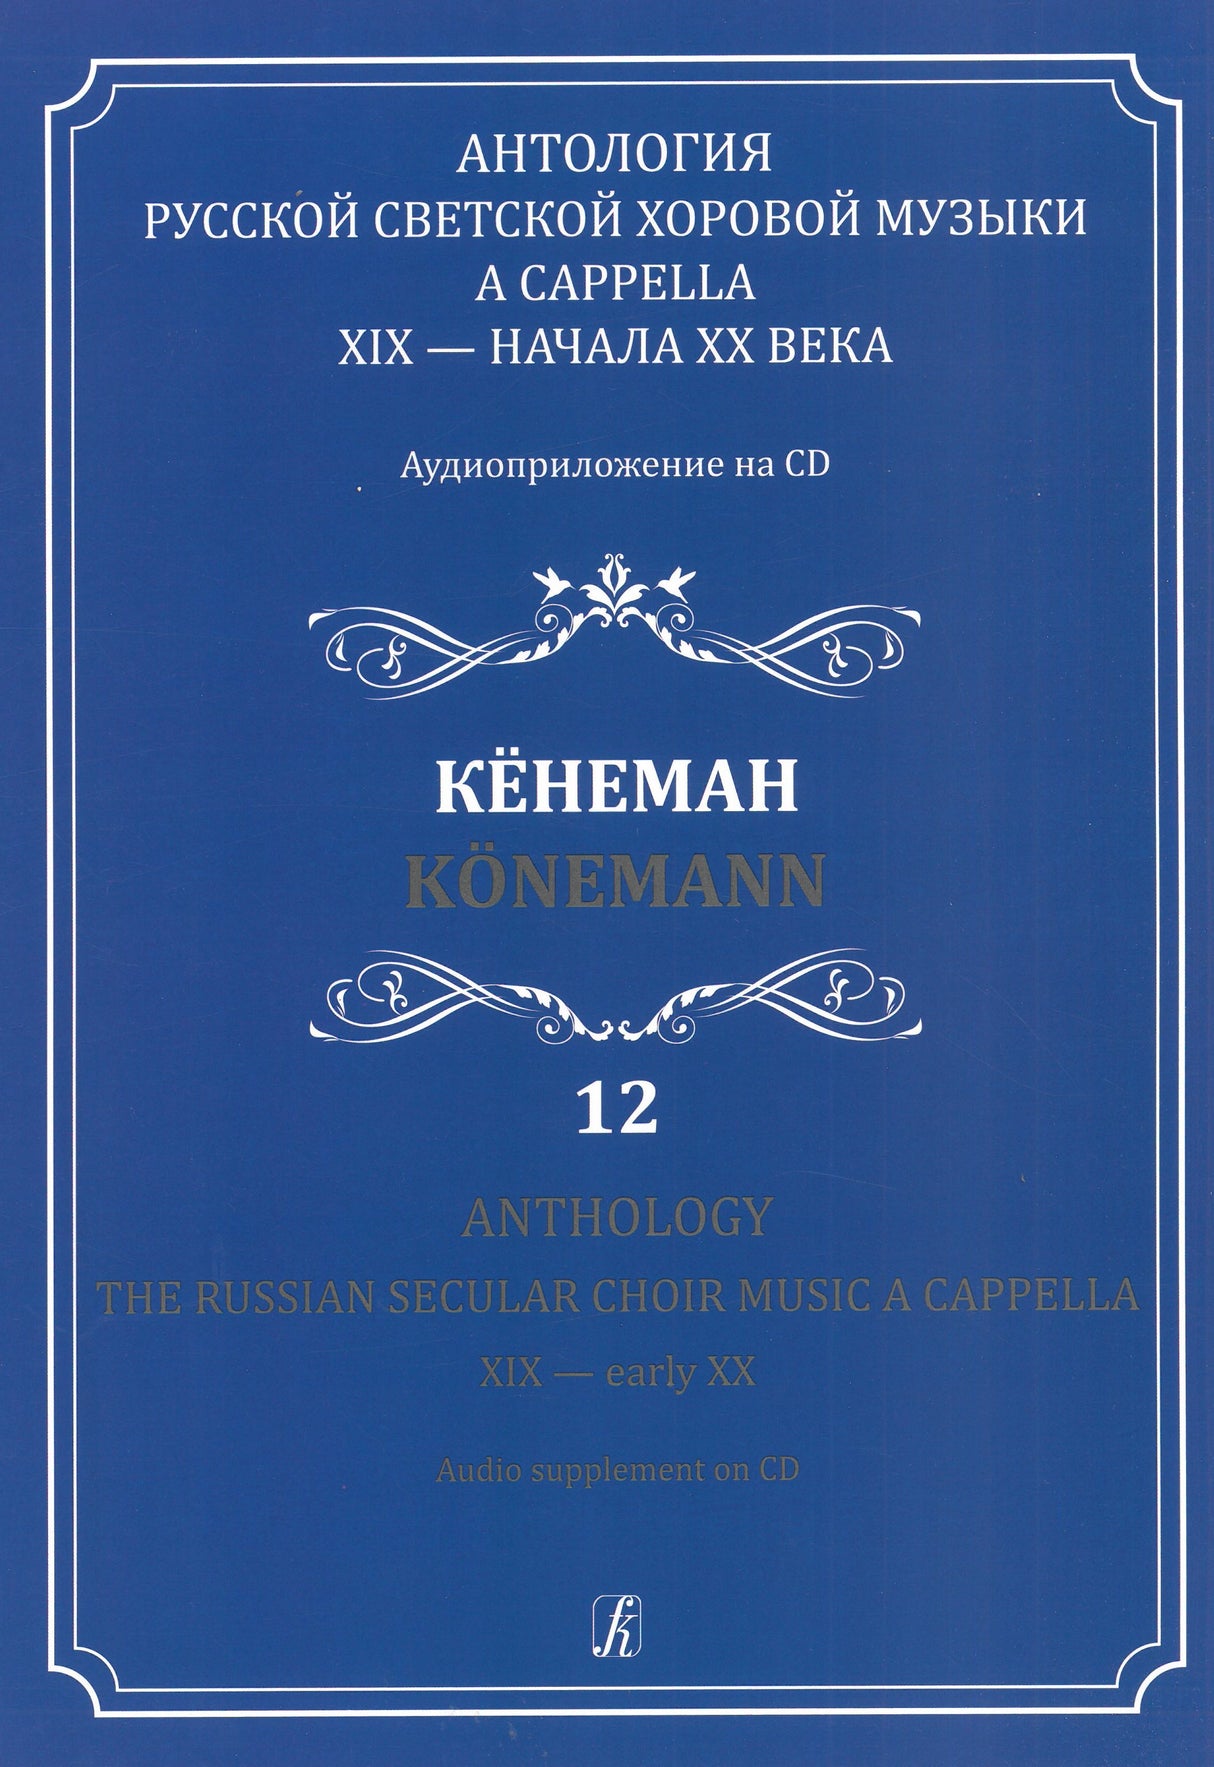 The Russian Secular Choir Music - Volume 12 (Koenemann)